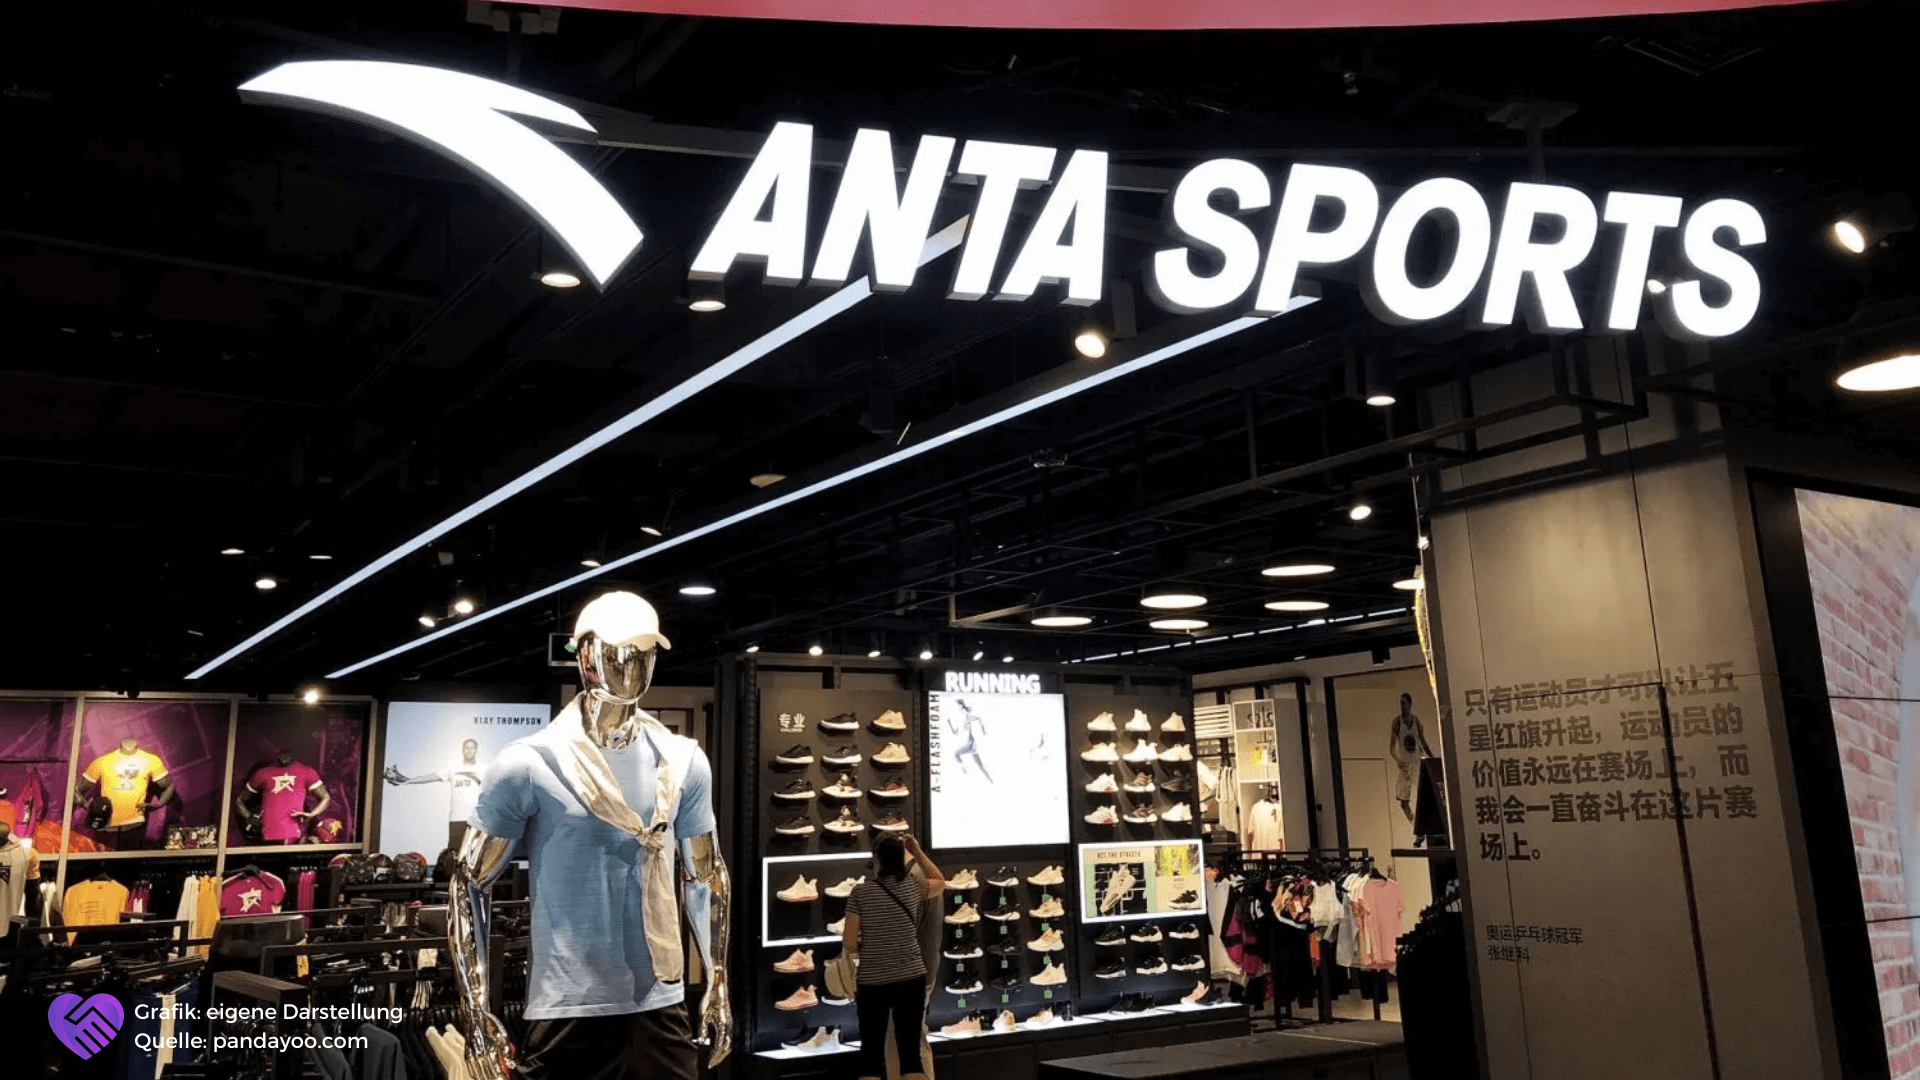 Anta Sports Aktie Analyse - Die Nike Alternative aus Asien